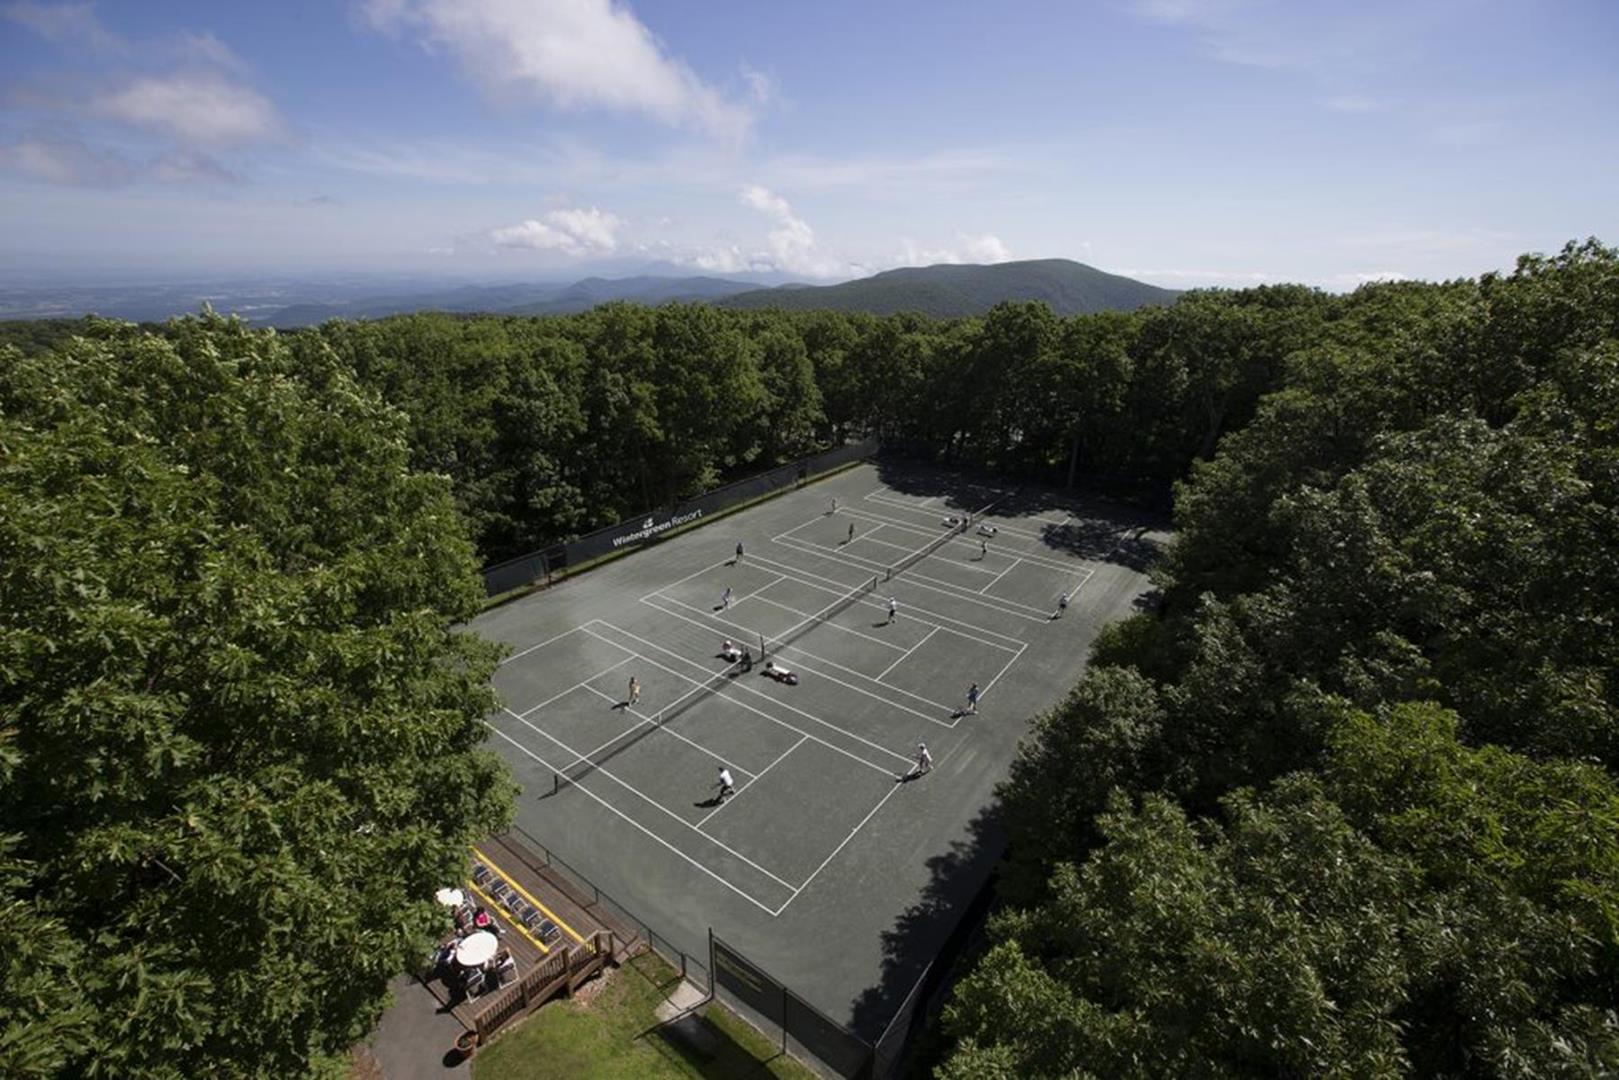 Wintergreen Resort - tennis courts